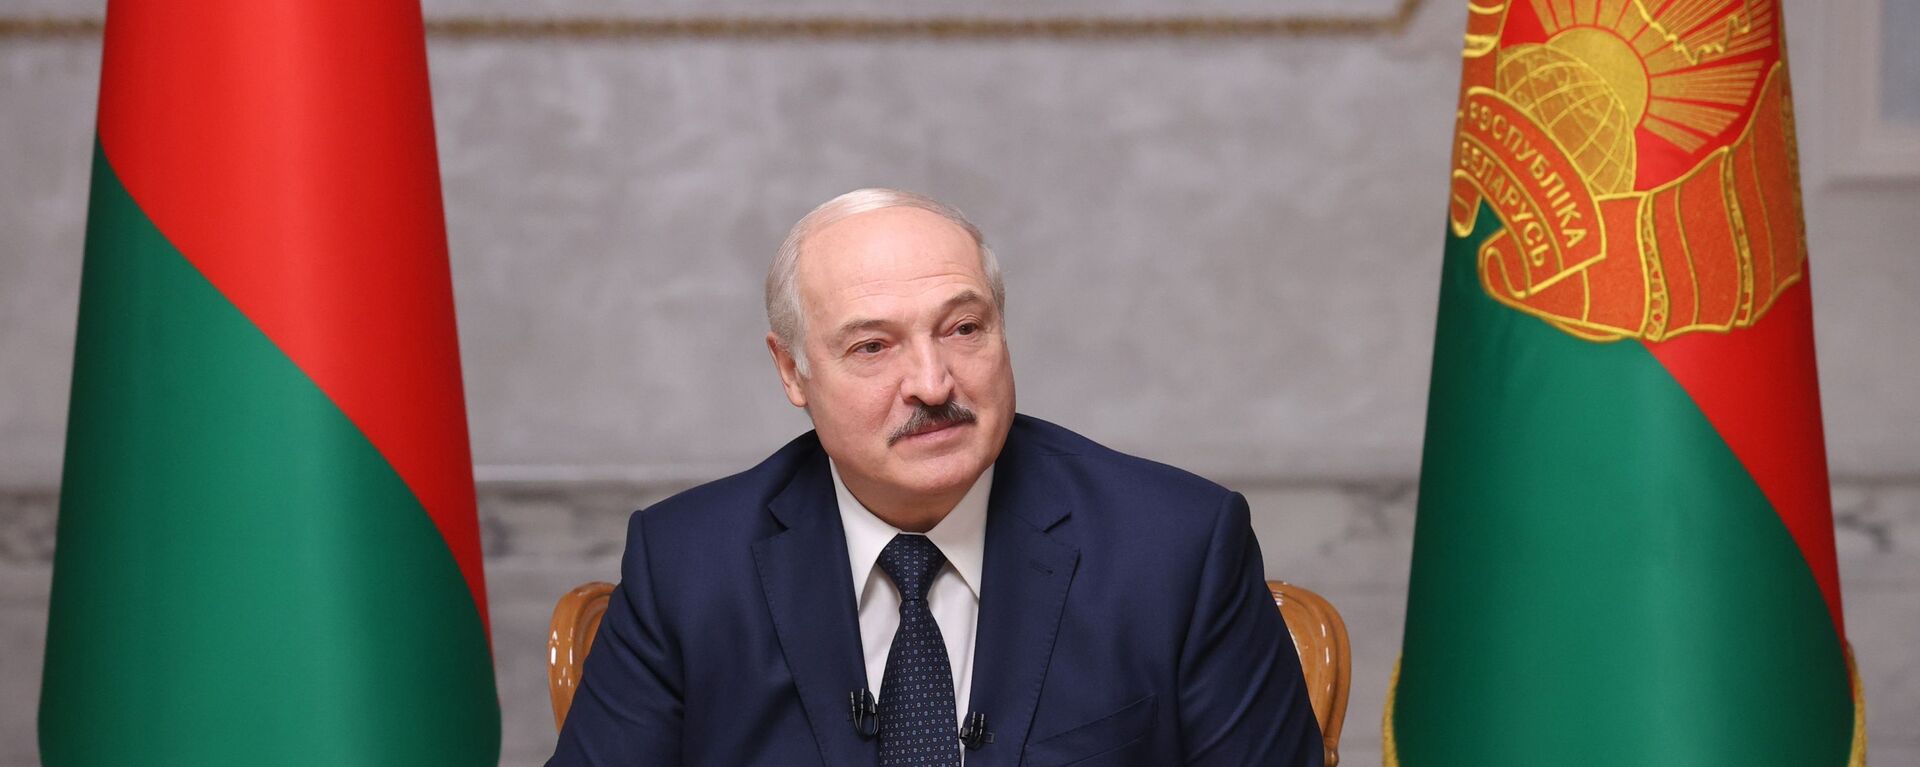 Председник Белорусије Александар Лукашенко - Sputnik Србија, 1920, 22.06.2021